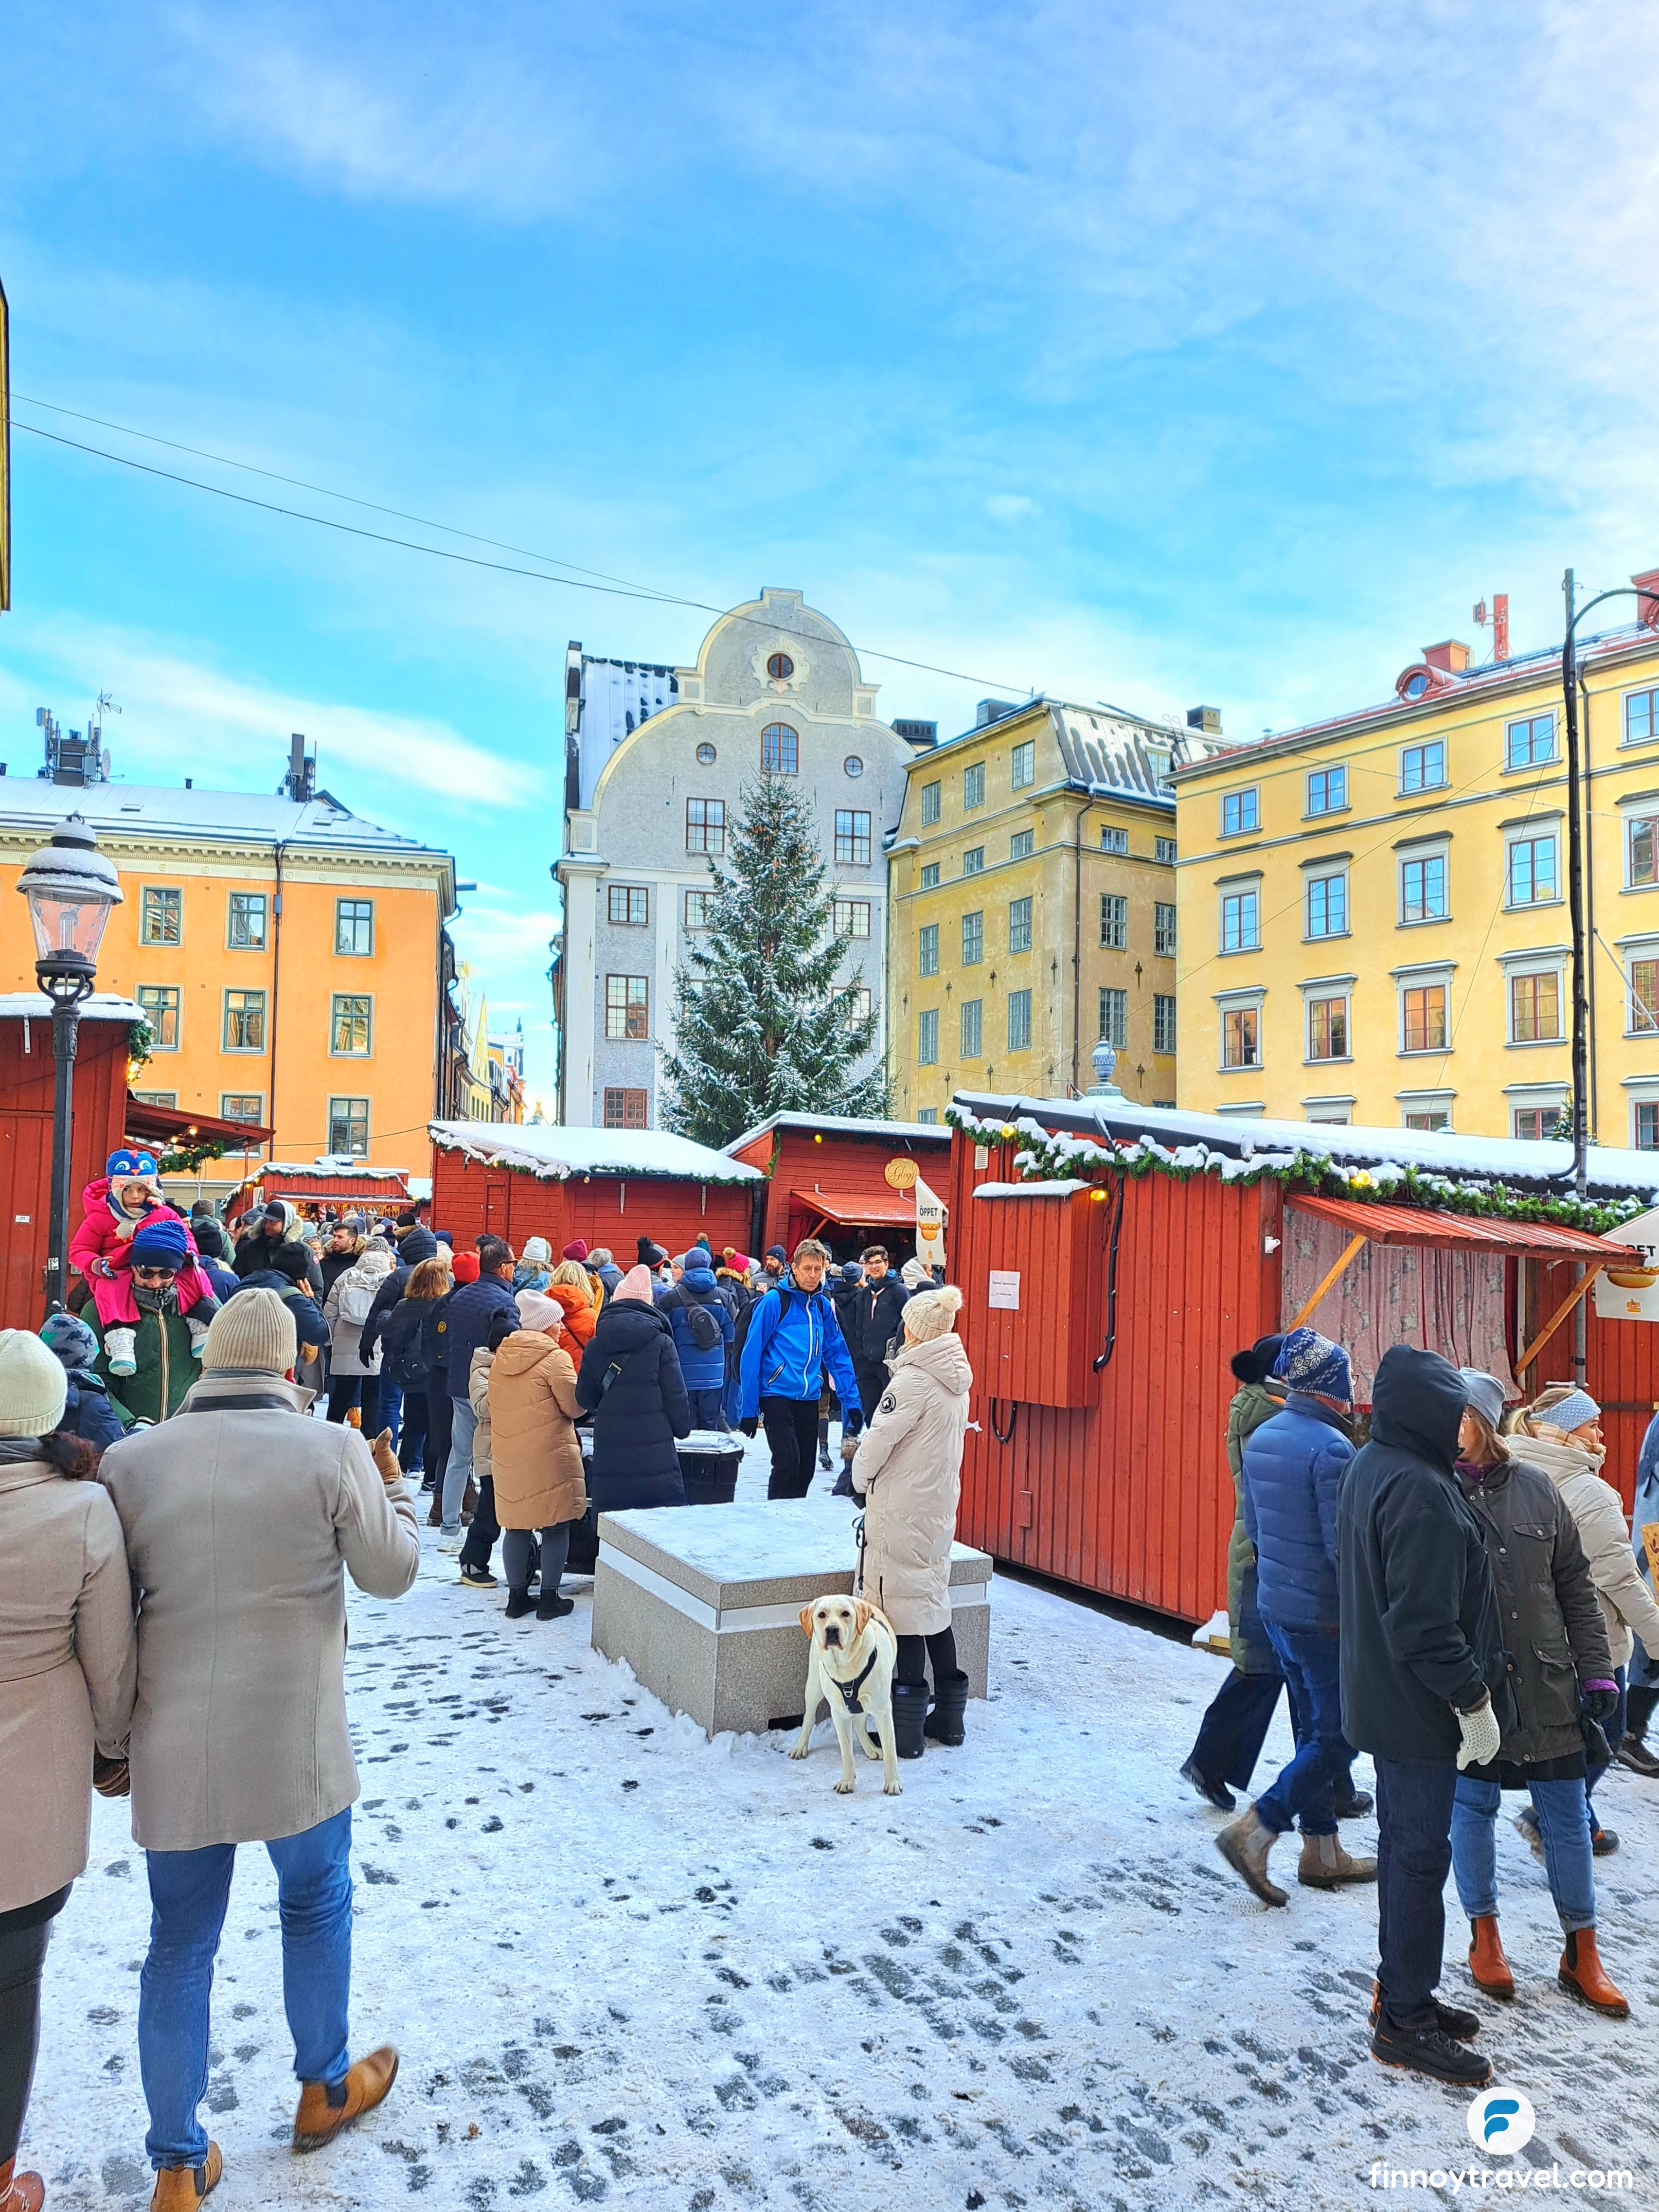 Stortorget_Christmas_Market_and_dog_Stockholm.jpg